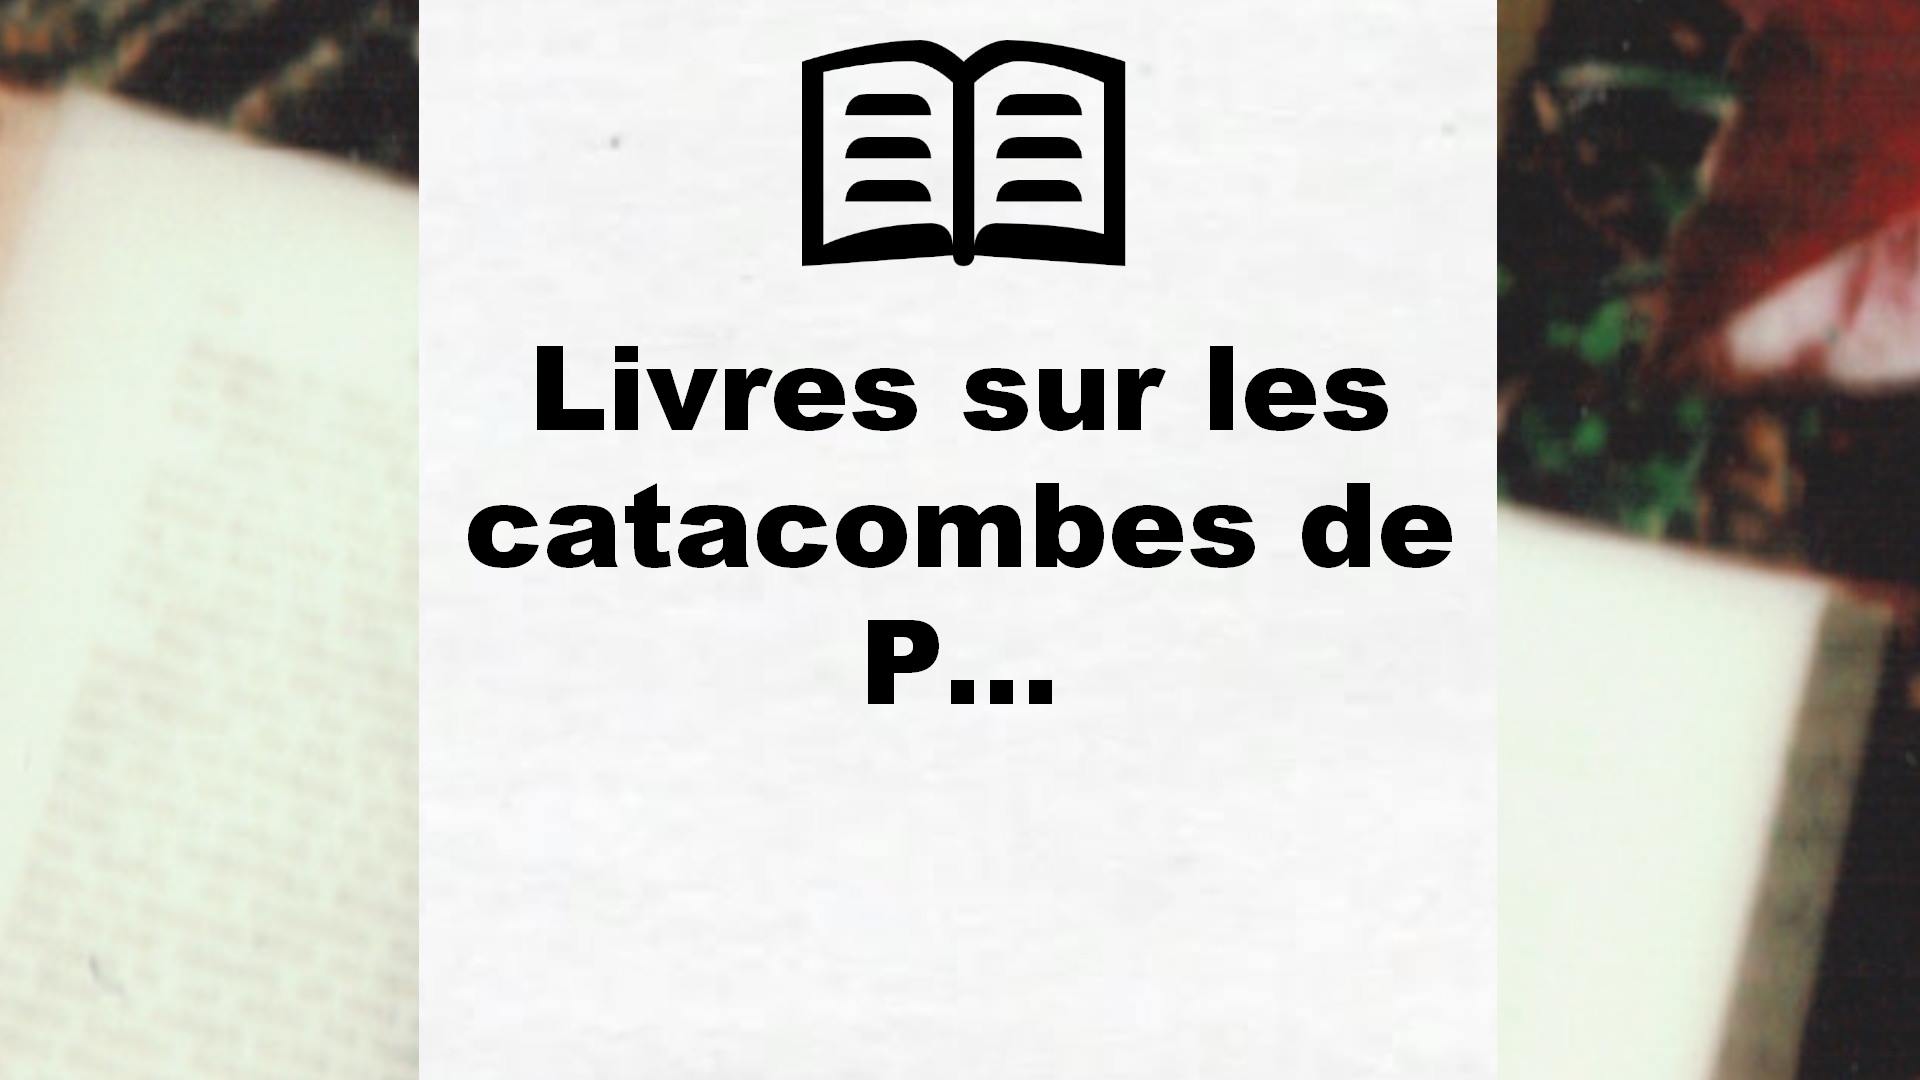 Livres sur les catacombes de Paris